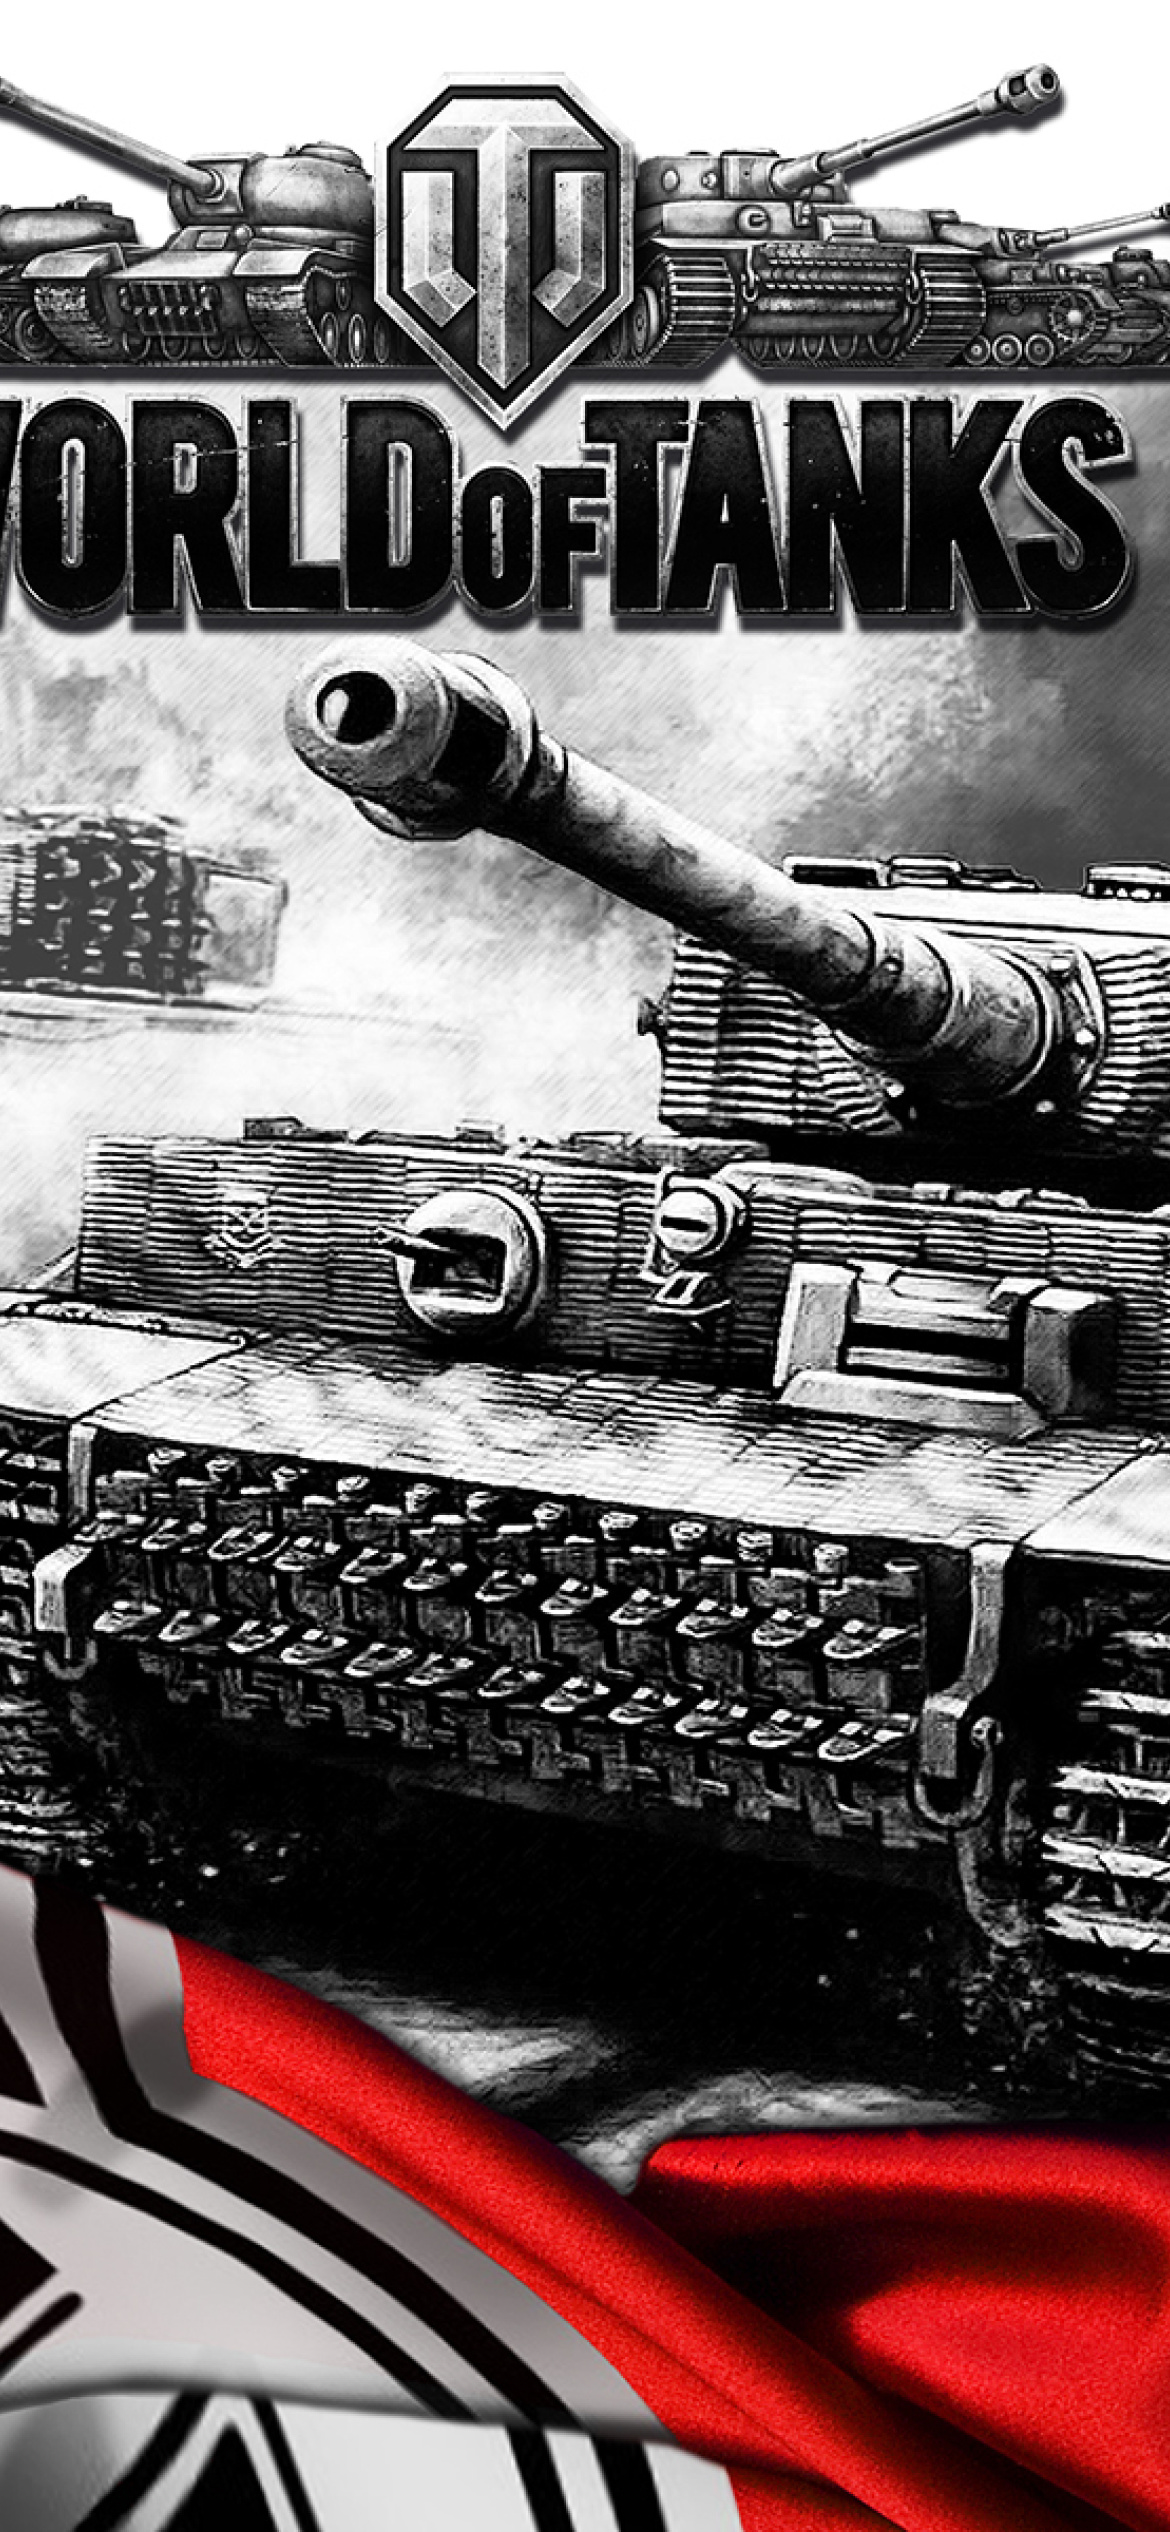 tiger tank wallpaper